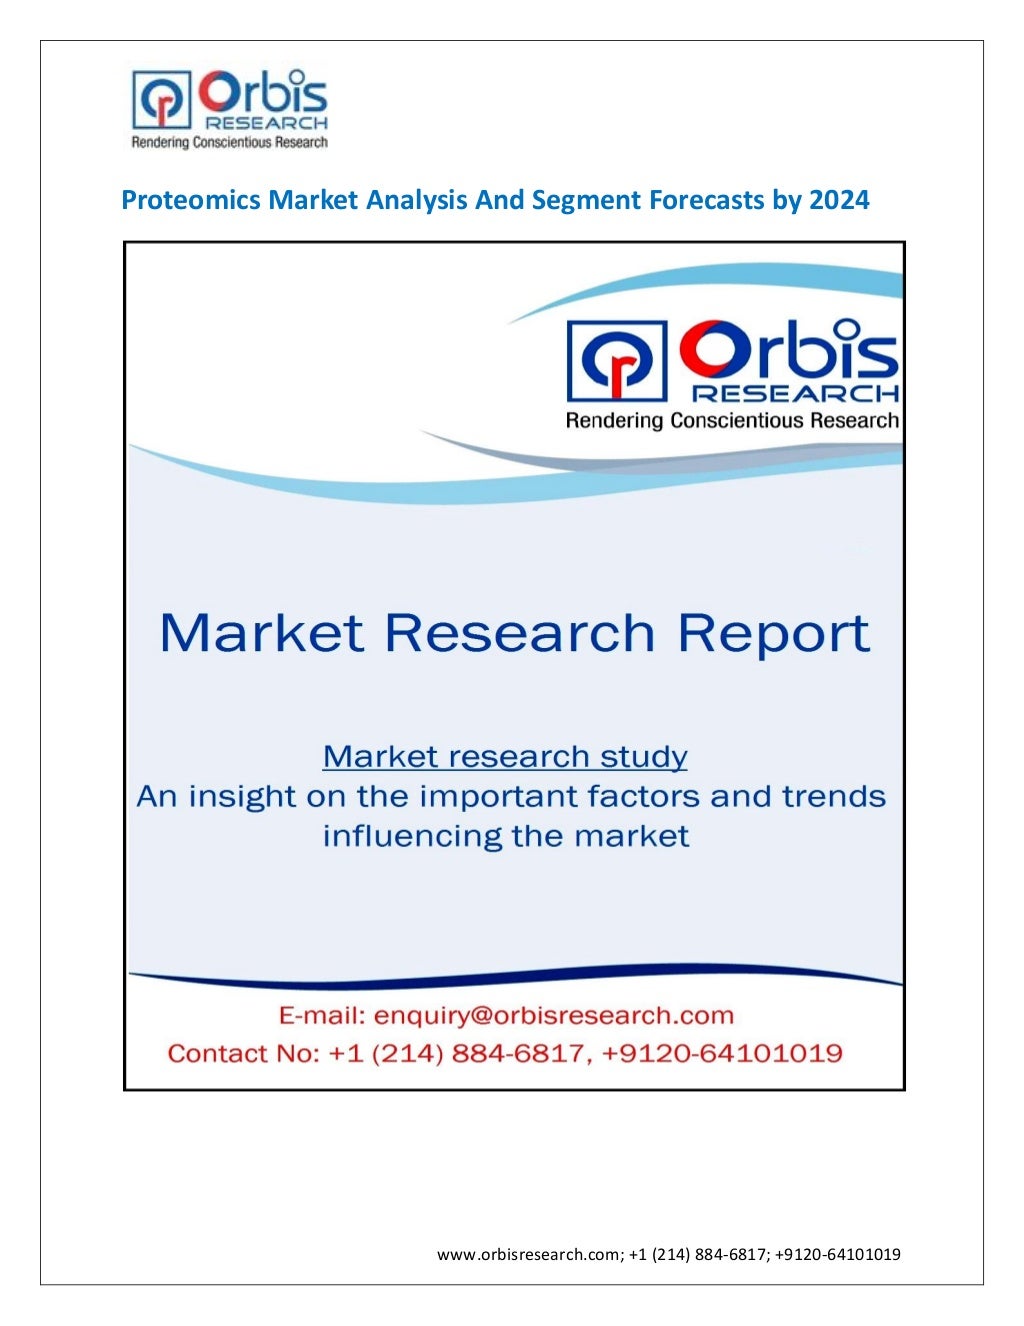 Proteomics market analysis by 2024